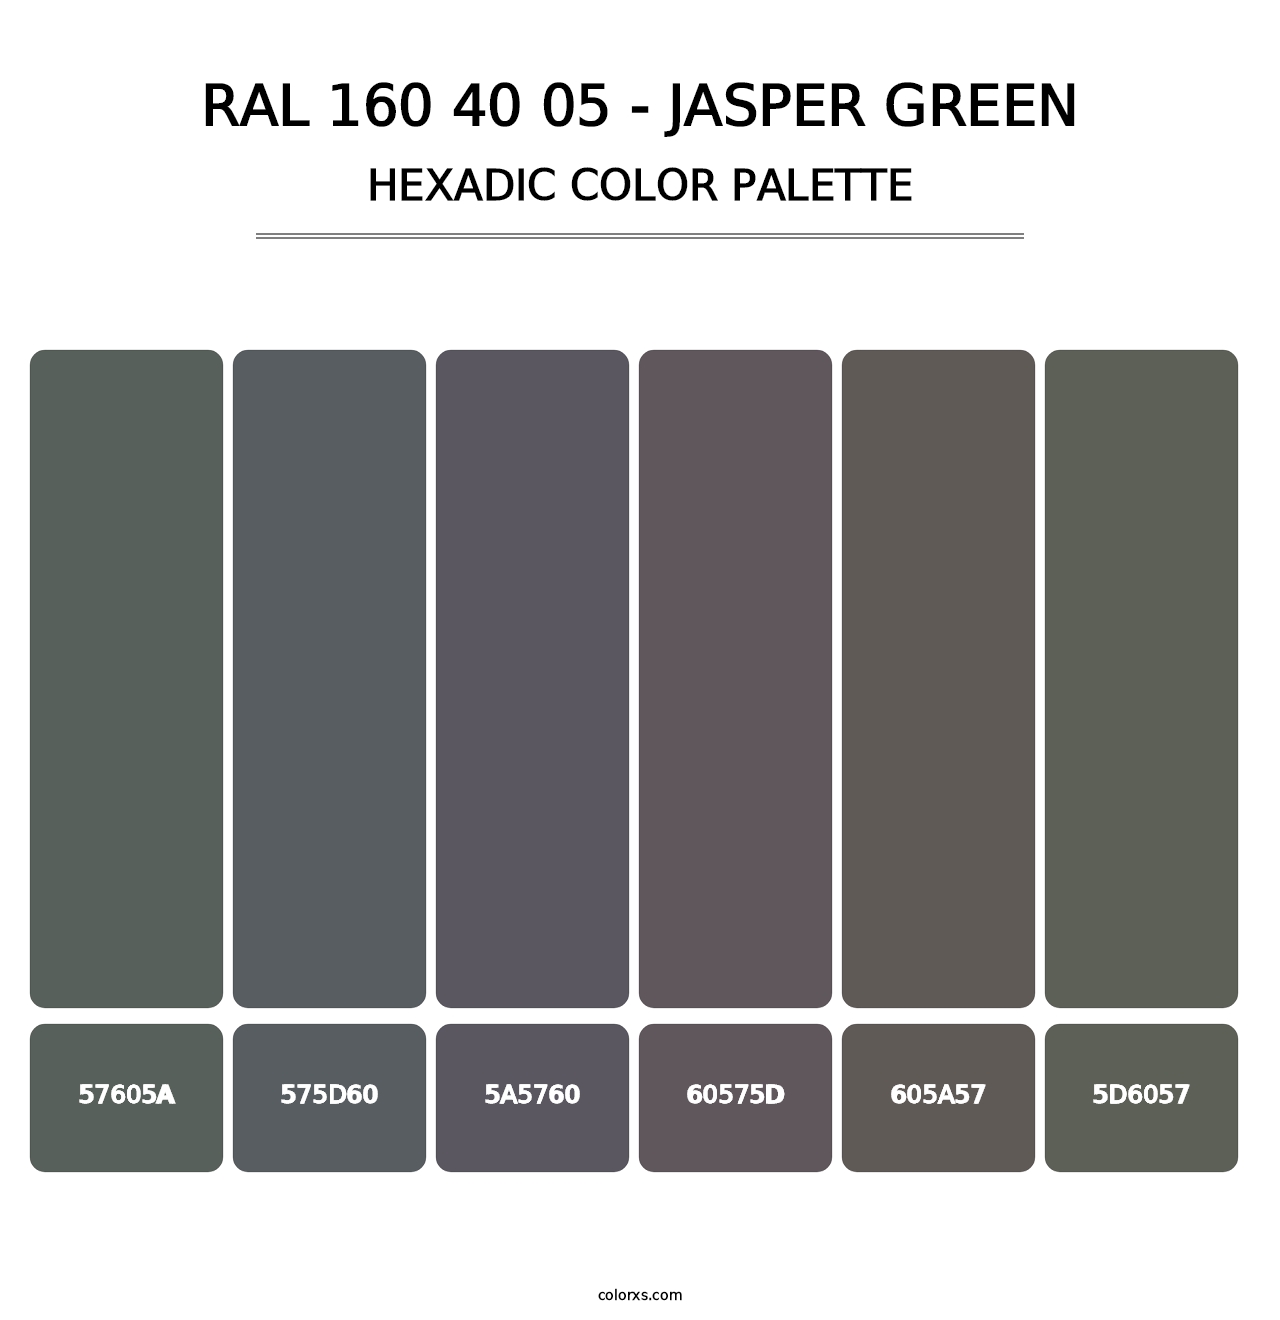 RAL 160 40 05 - Jasper Green - Hexadic Color Palette